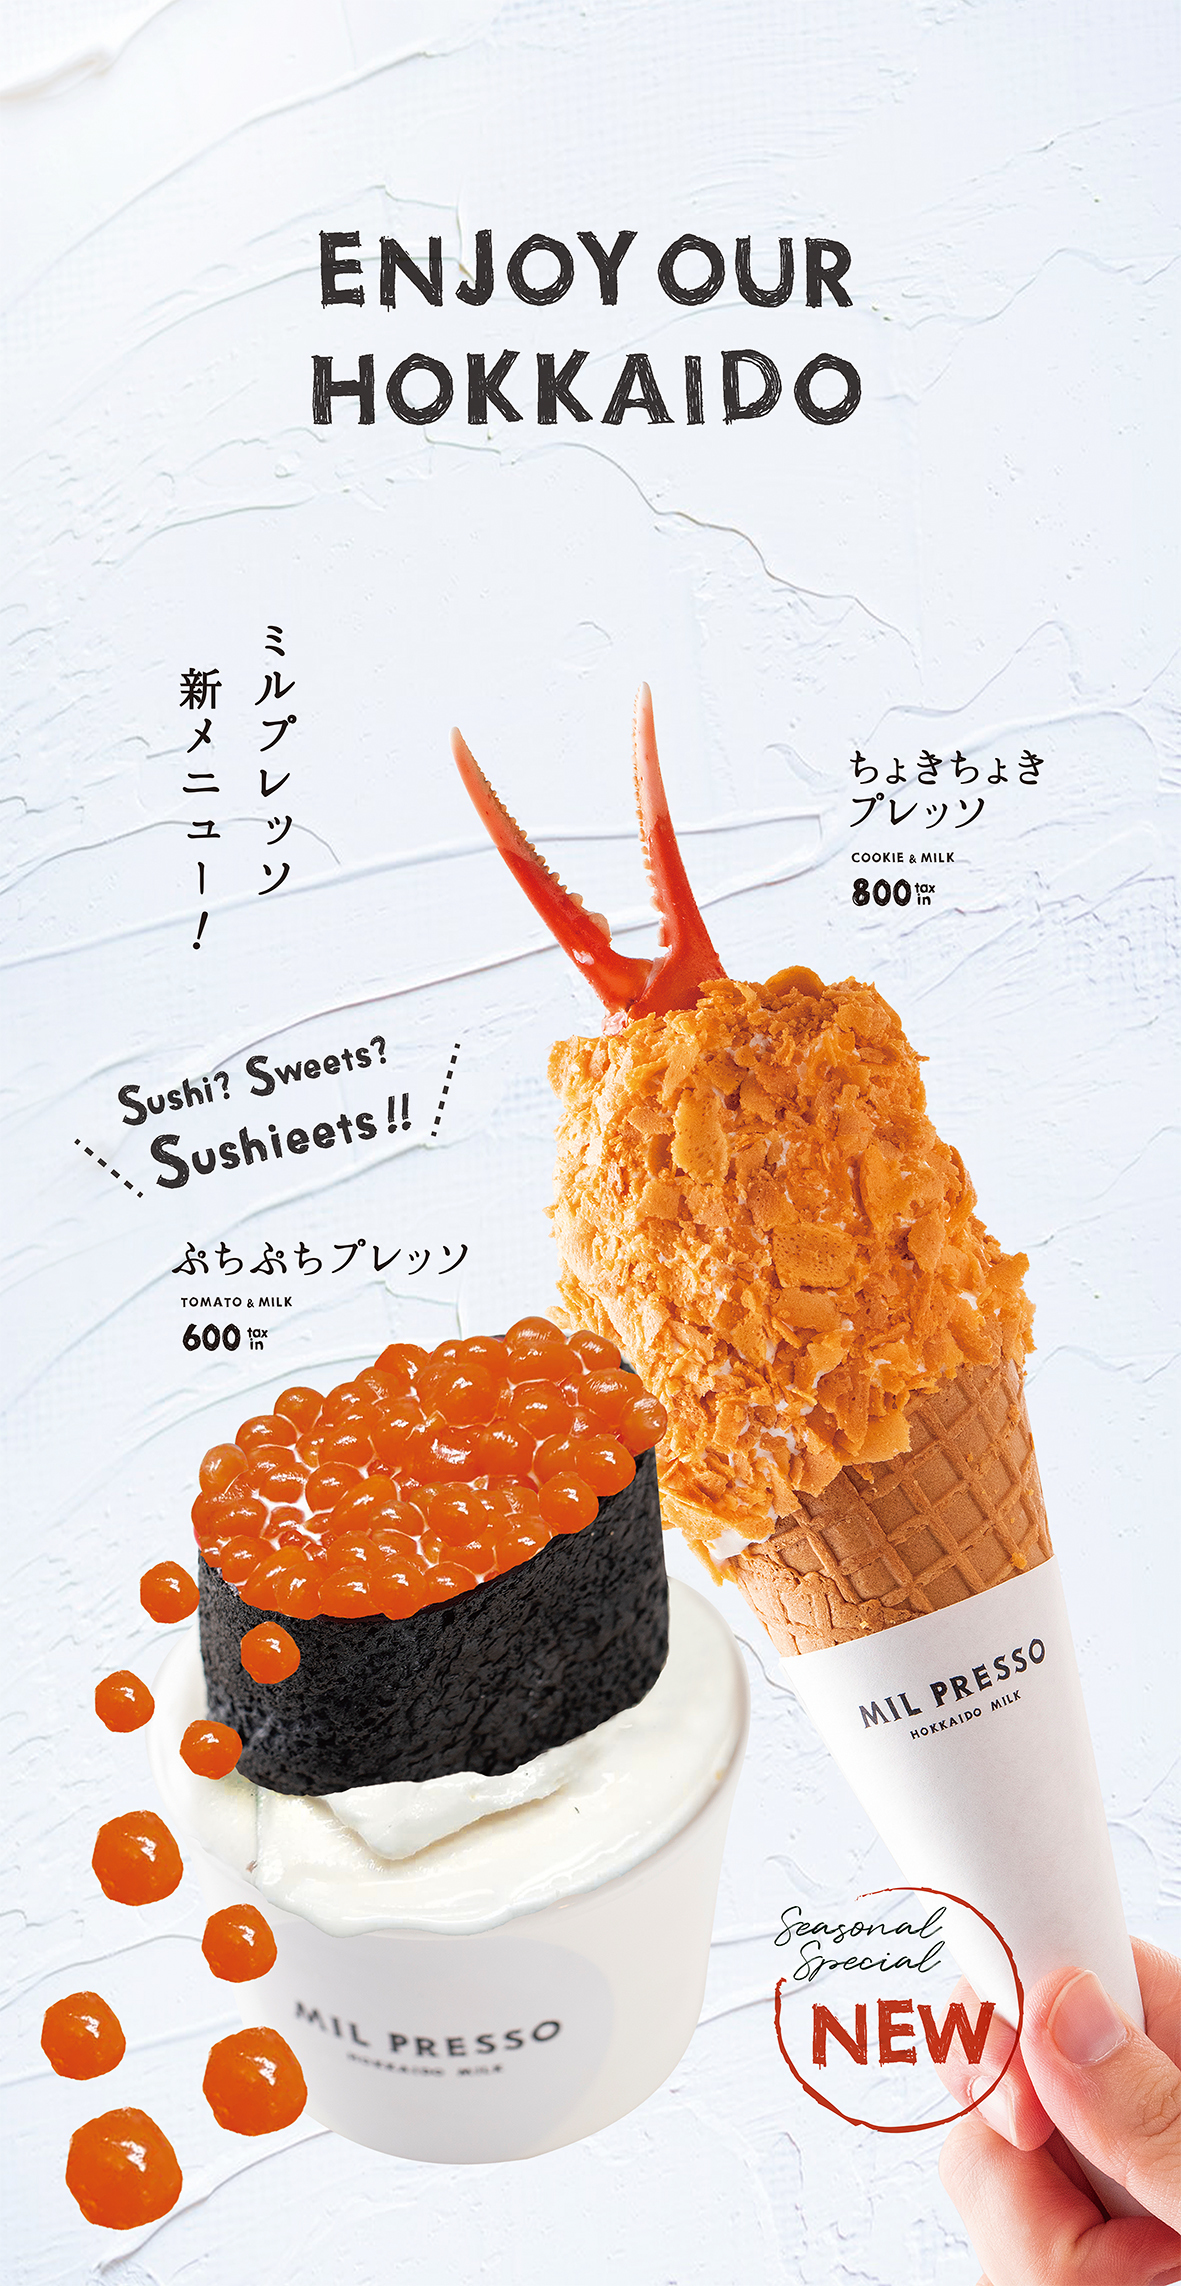 北海道北広島 行列のできるソフトクリームショップ「MIL PRESSO」  冬の新作 その名も「スシーツ」と  みんな大好き あのコロッケ型スイーツ